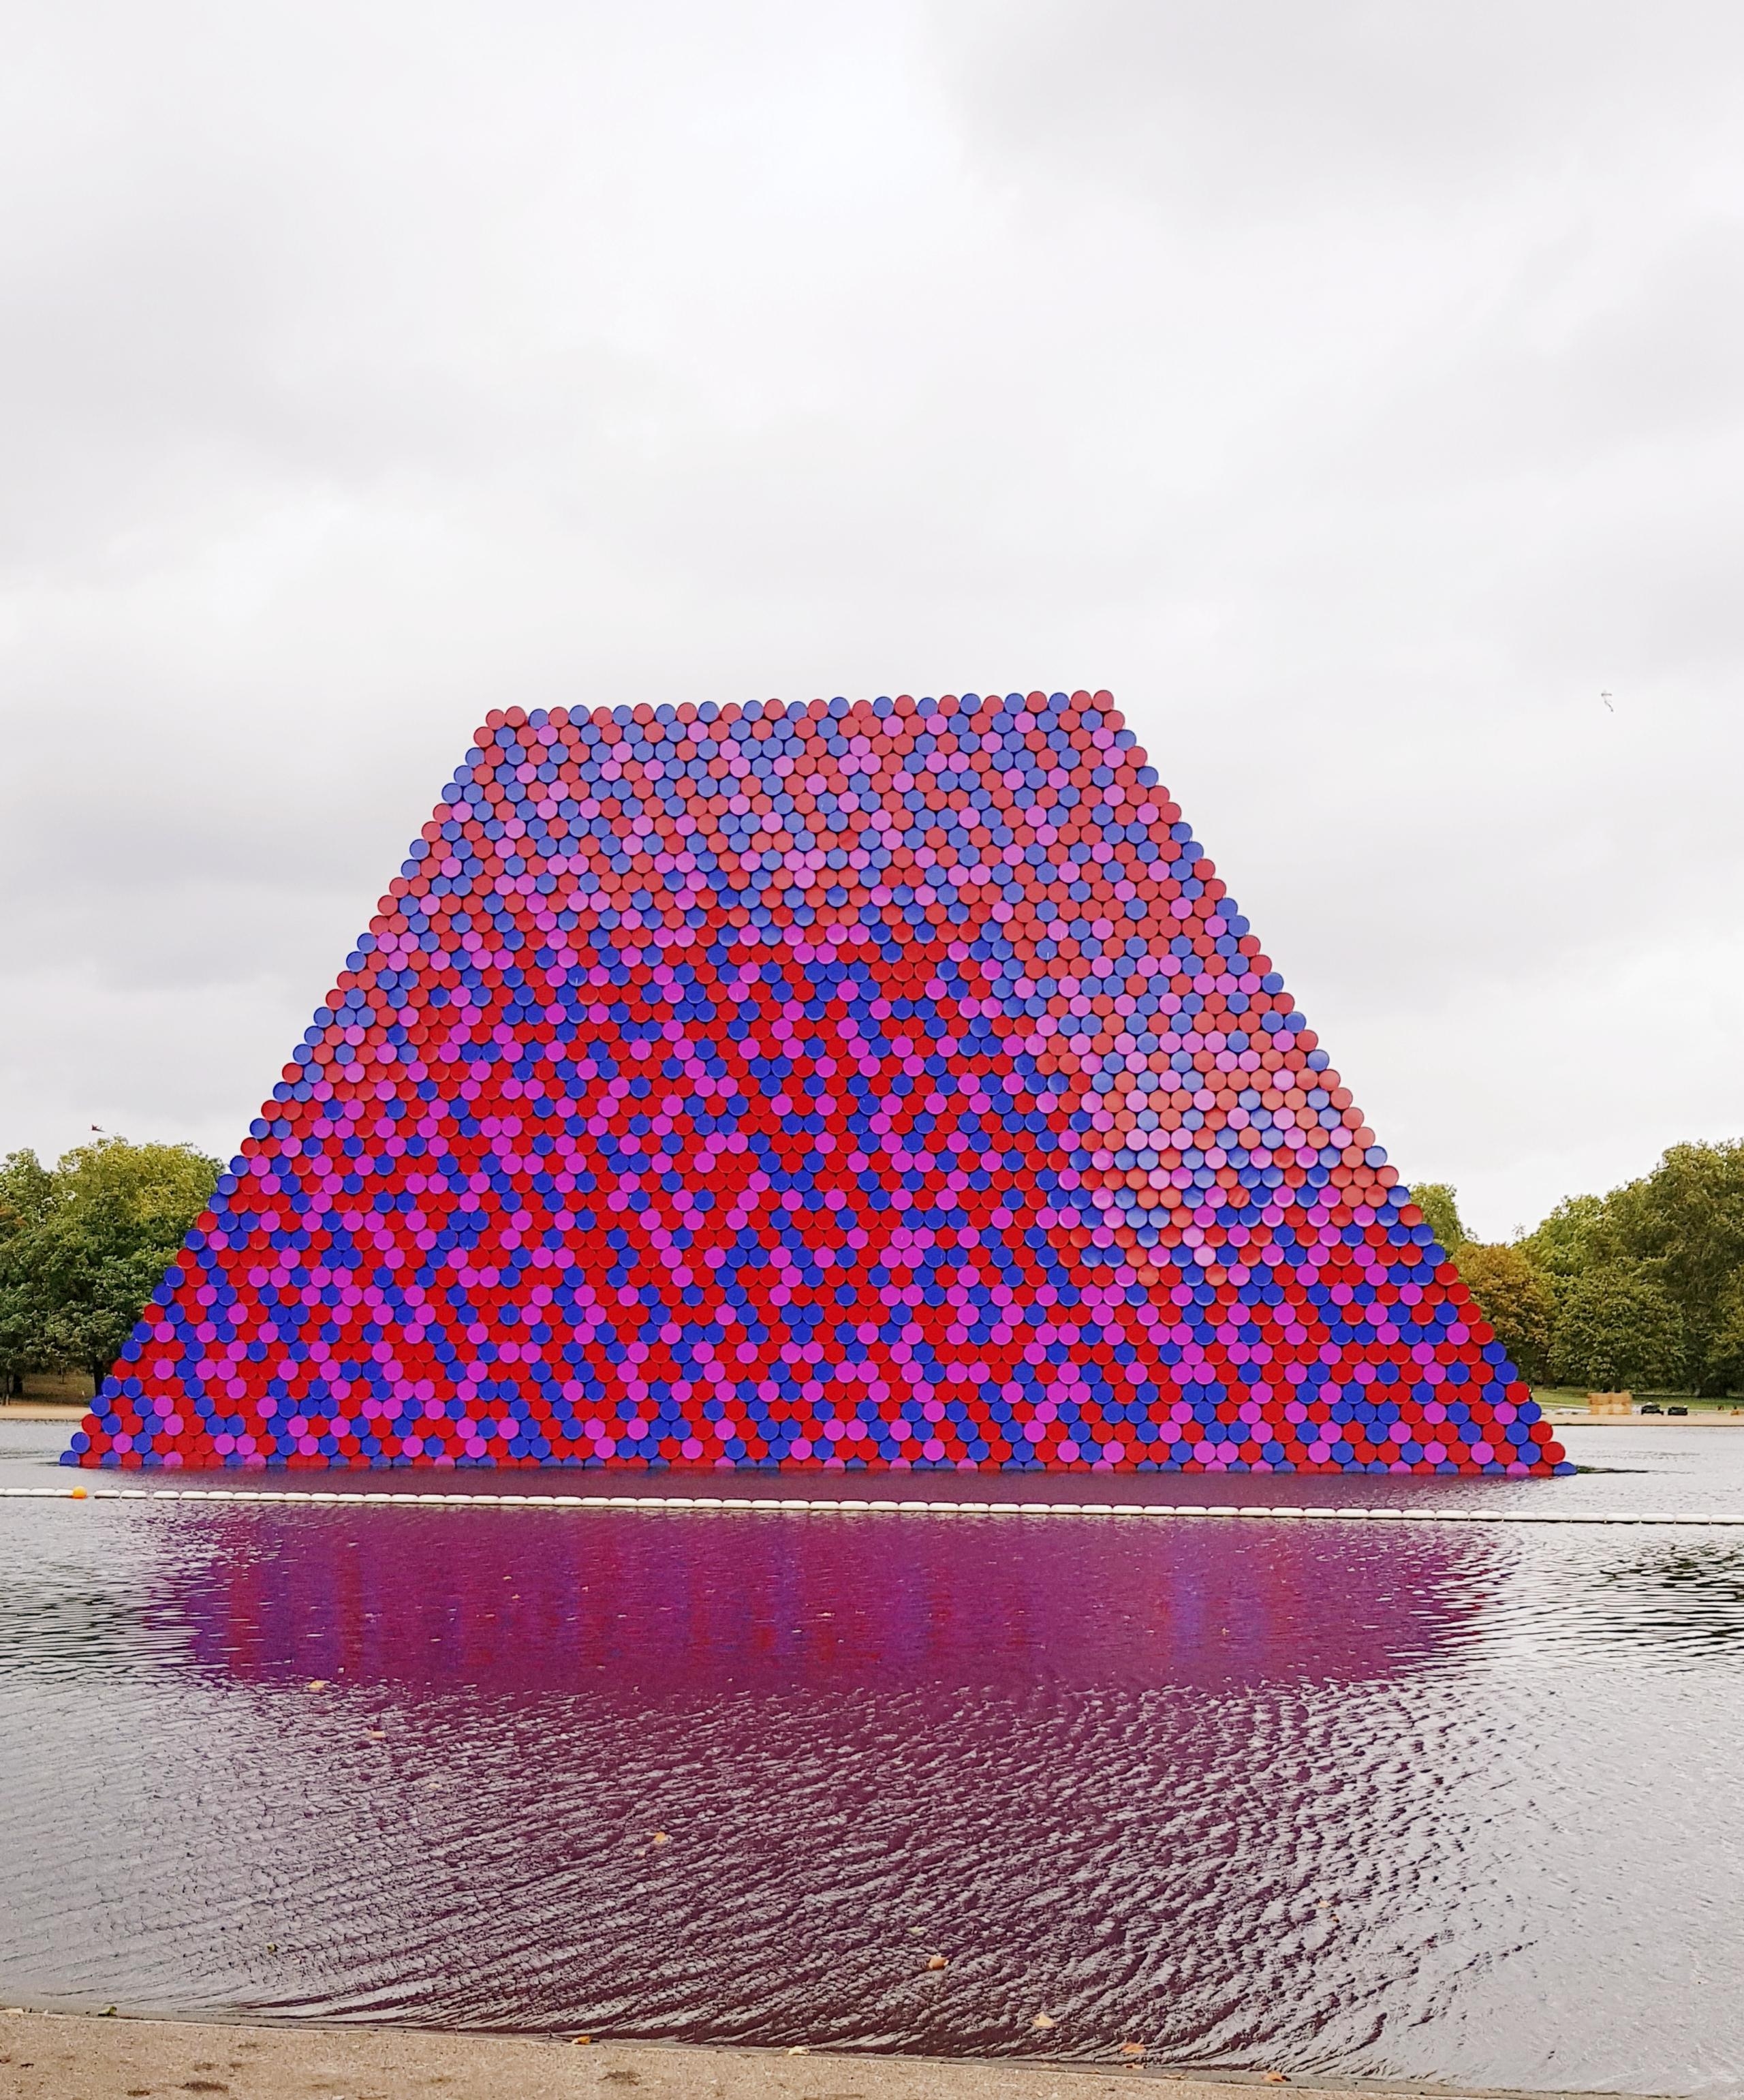 Mit 7506 Ölfässern hat Christo ein Kunstwerk im Hydepark geschaffen. Das musste ich mir anschauen. #tagestripp #london